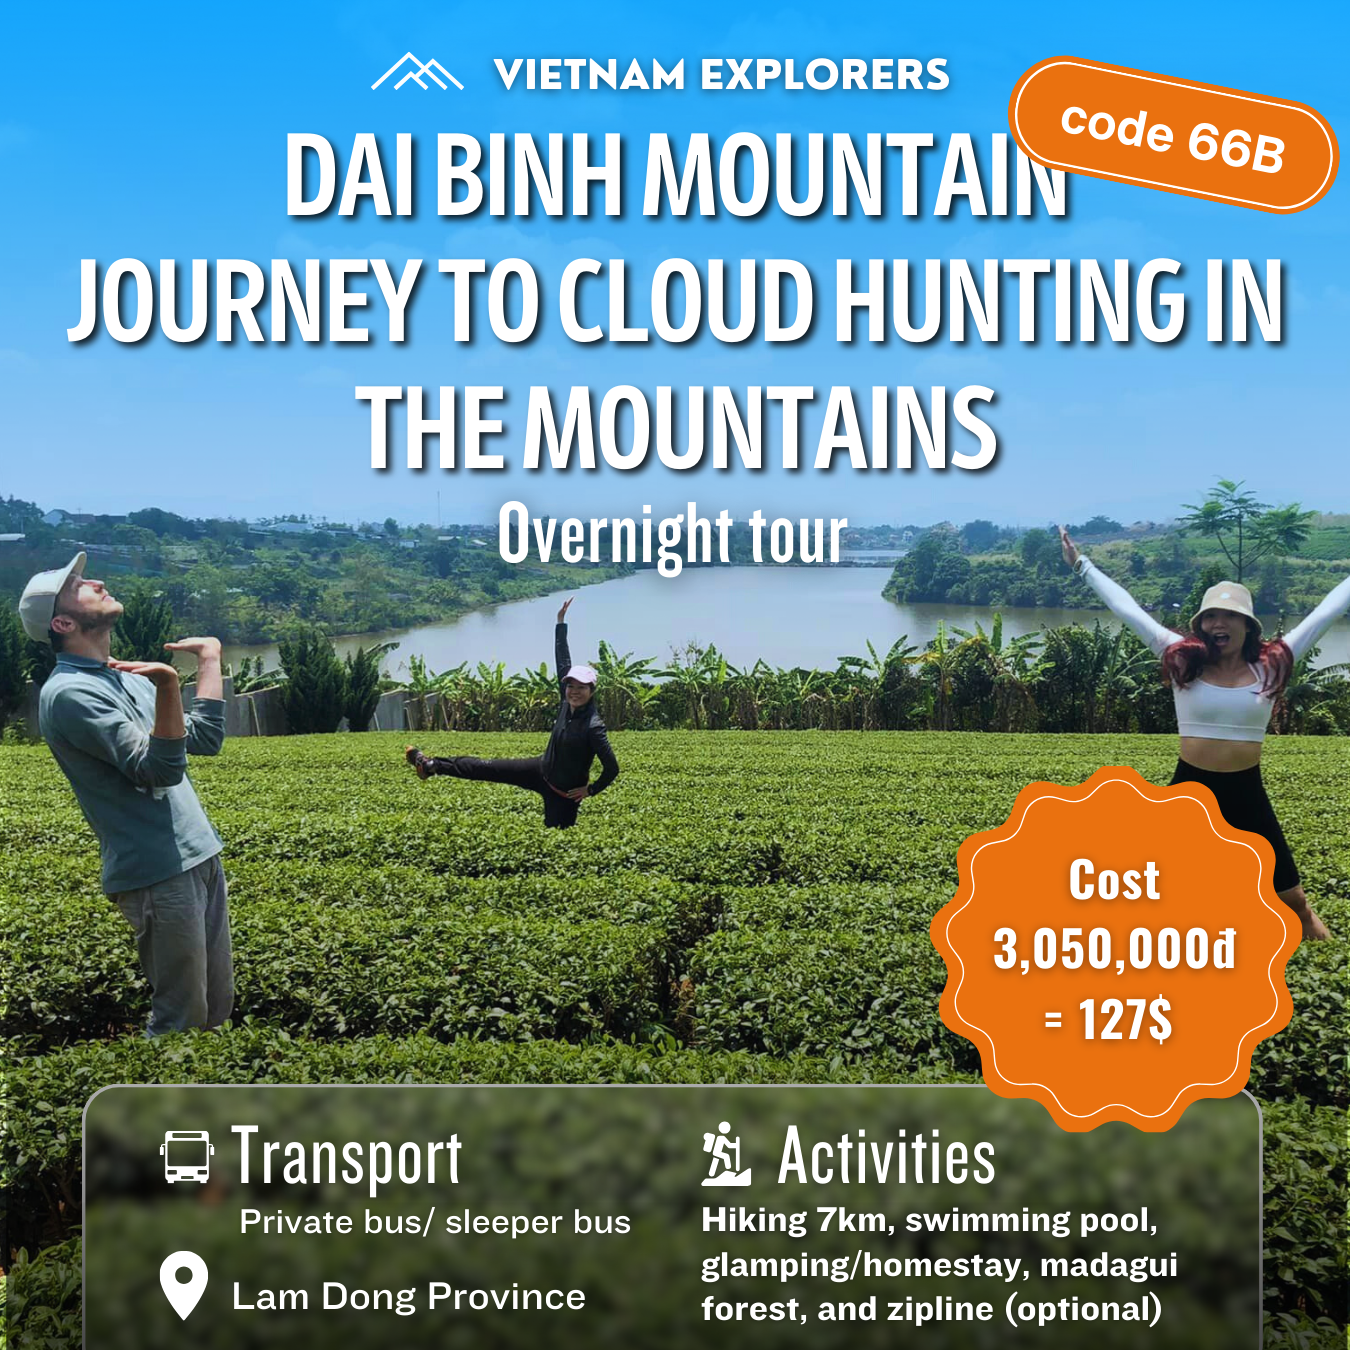 66B: (2 JOURS) Montagne Dai Binh, Chasse aux Nuages ​​dans les Montagnes